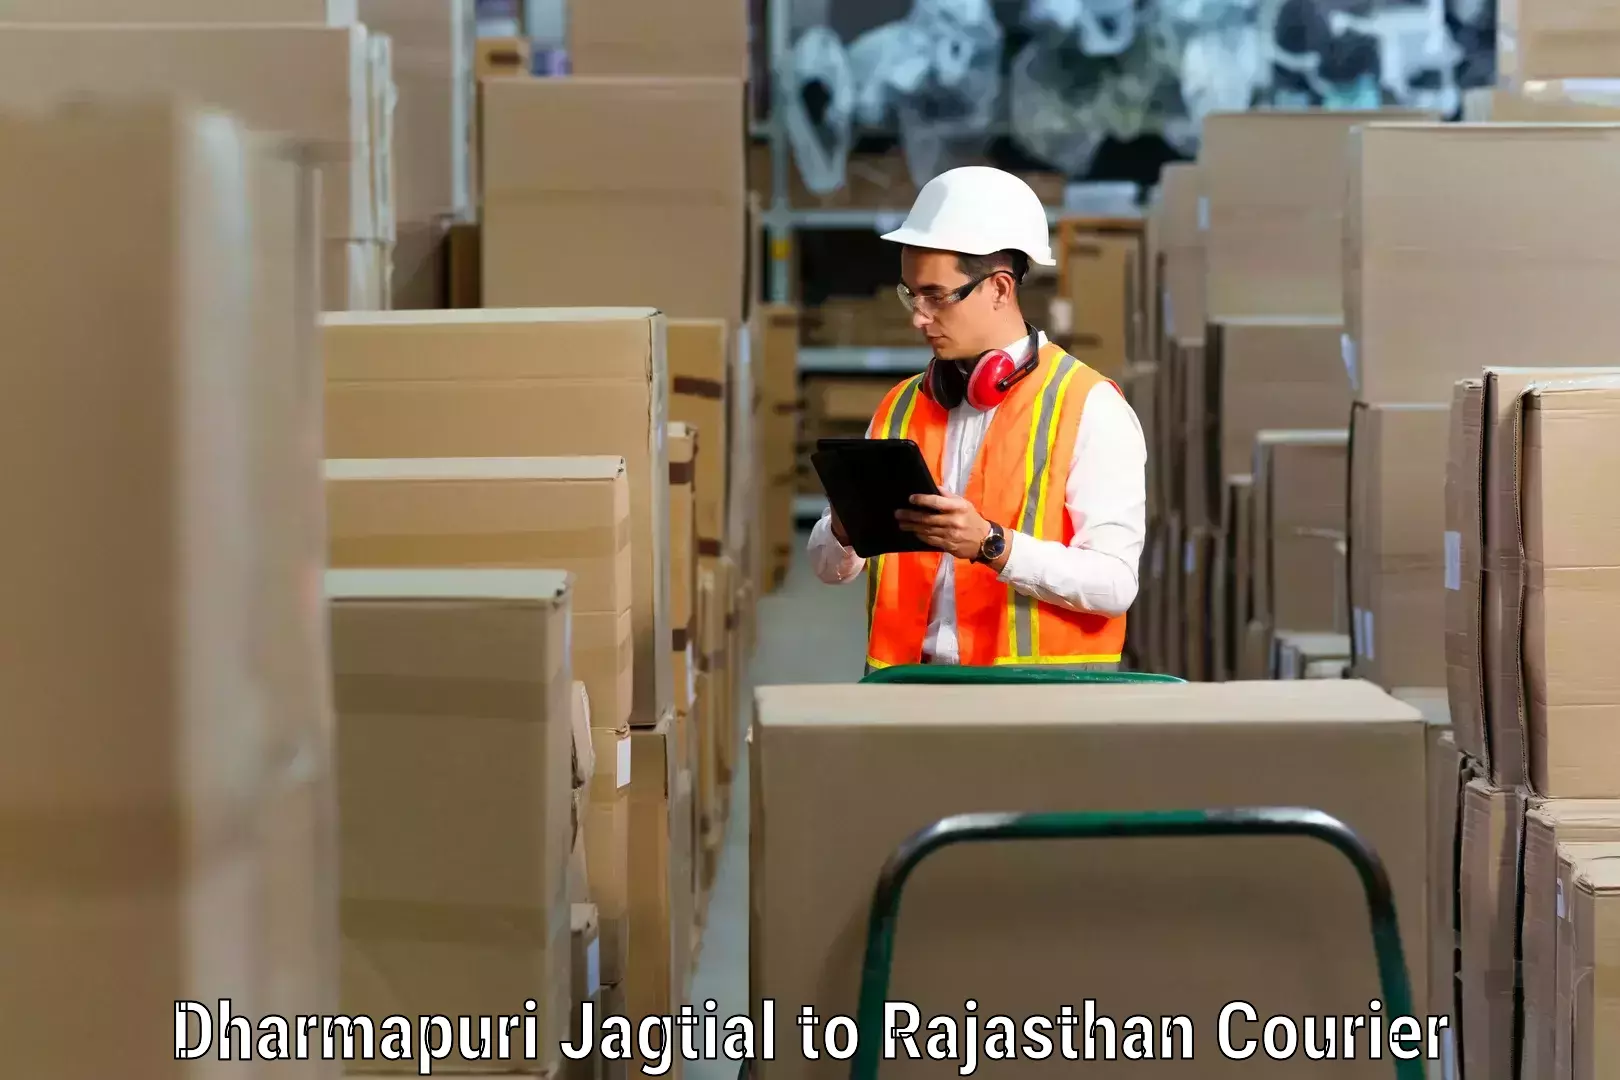 Household goods movers and packers Dharmapuri Jagtial to Mandalgarh